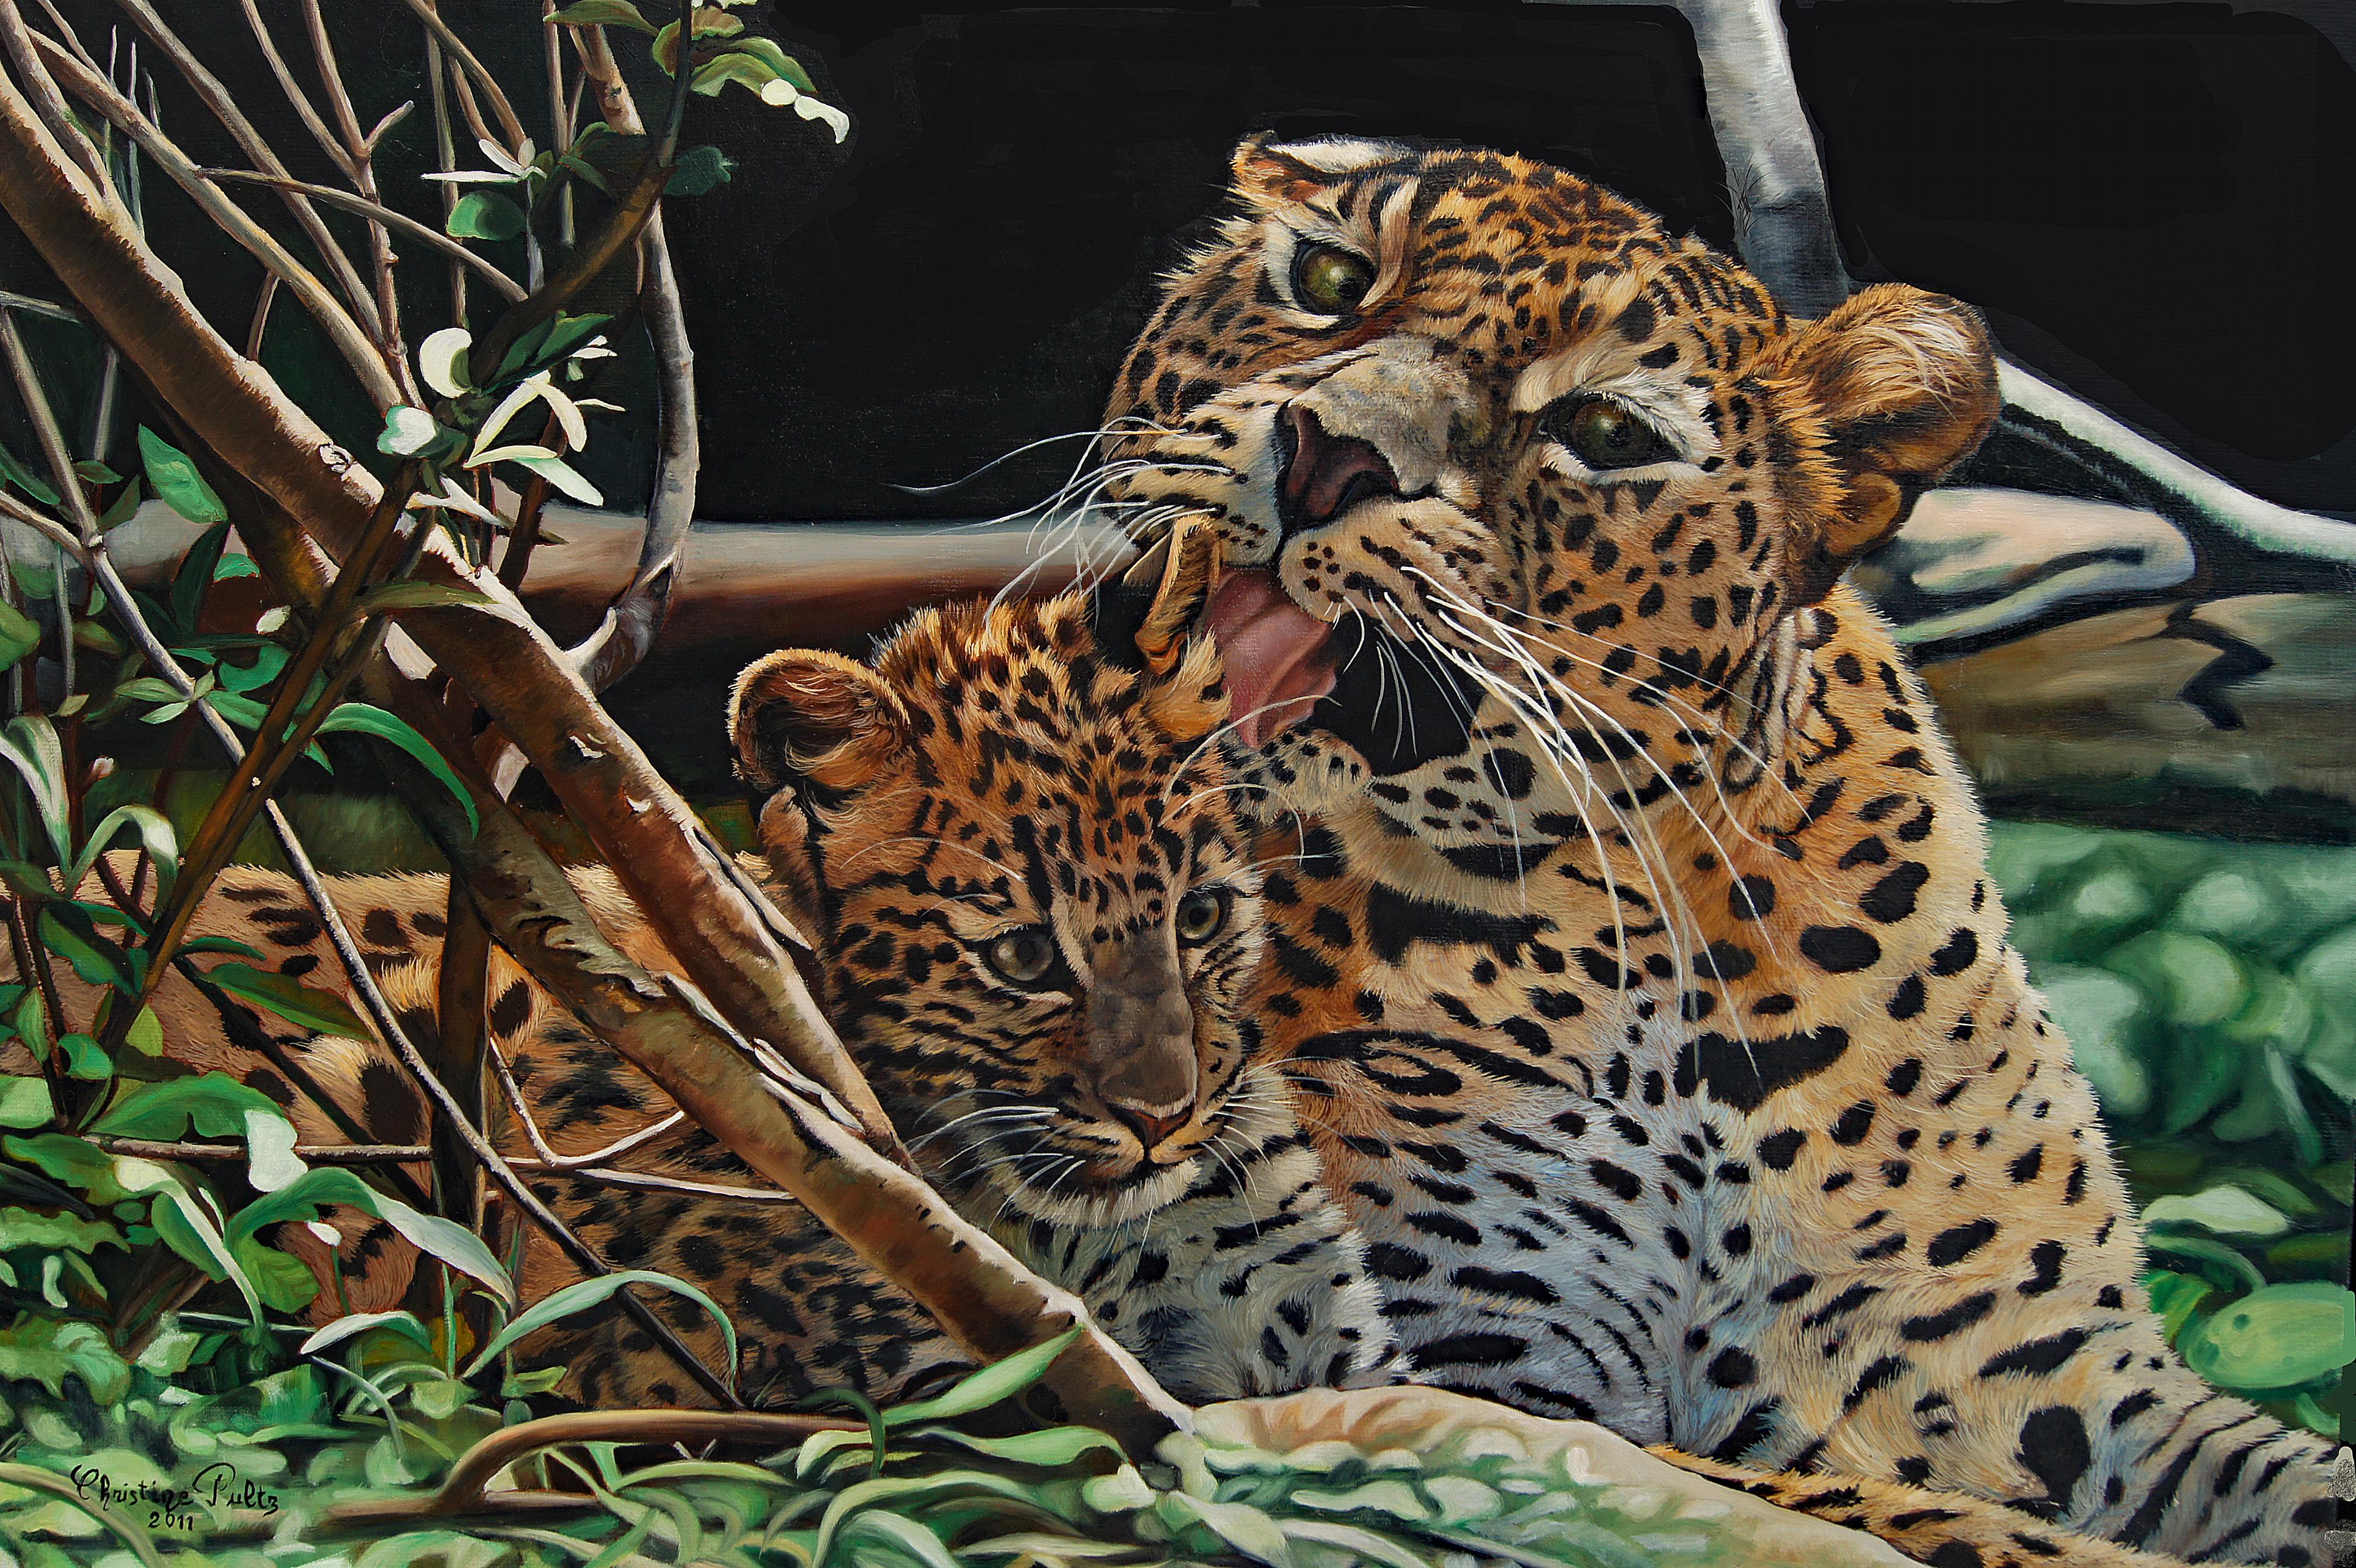 Peinture française contemporaine d'animaux par Christine Pultz - Les Sri Lankans